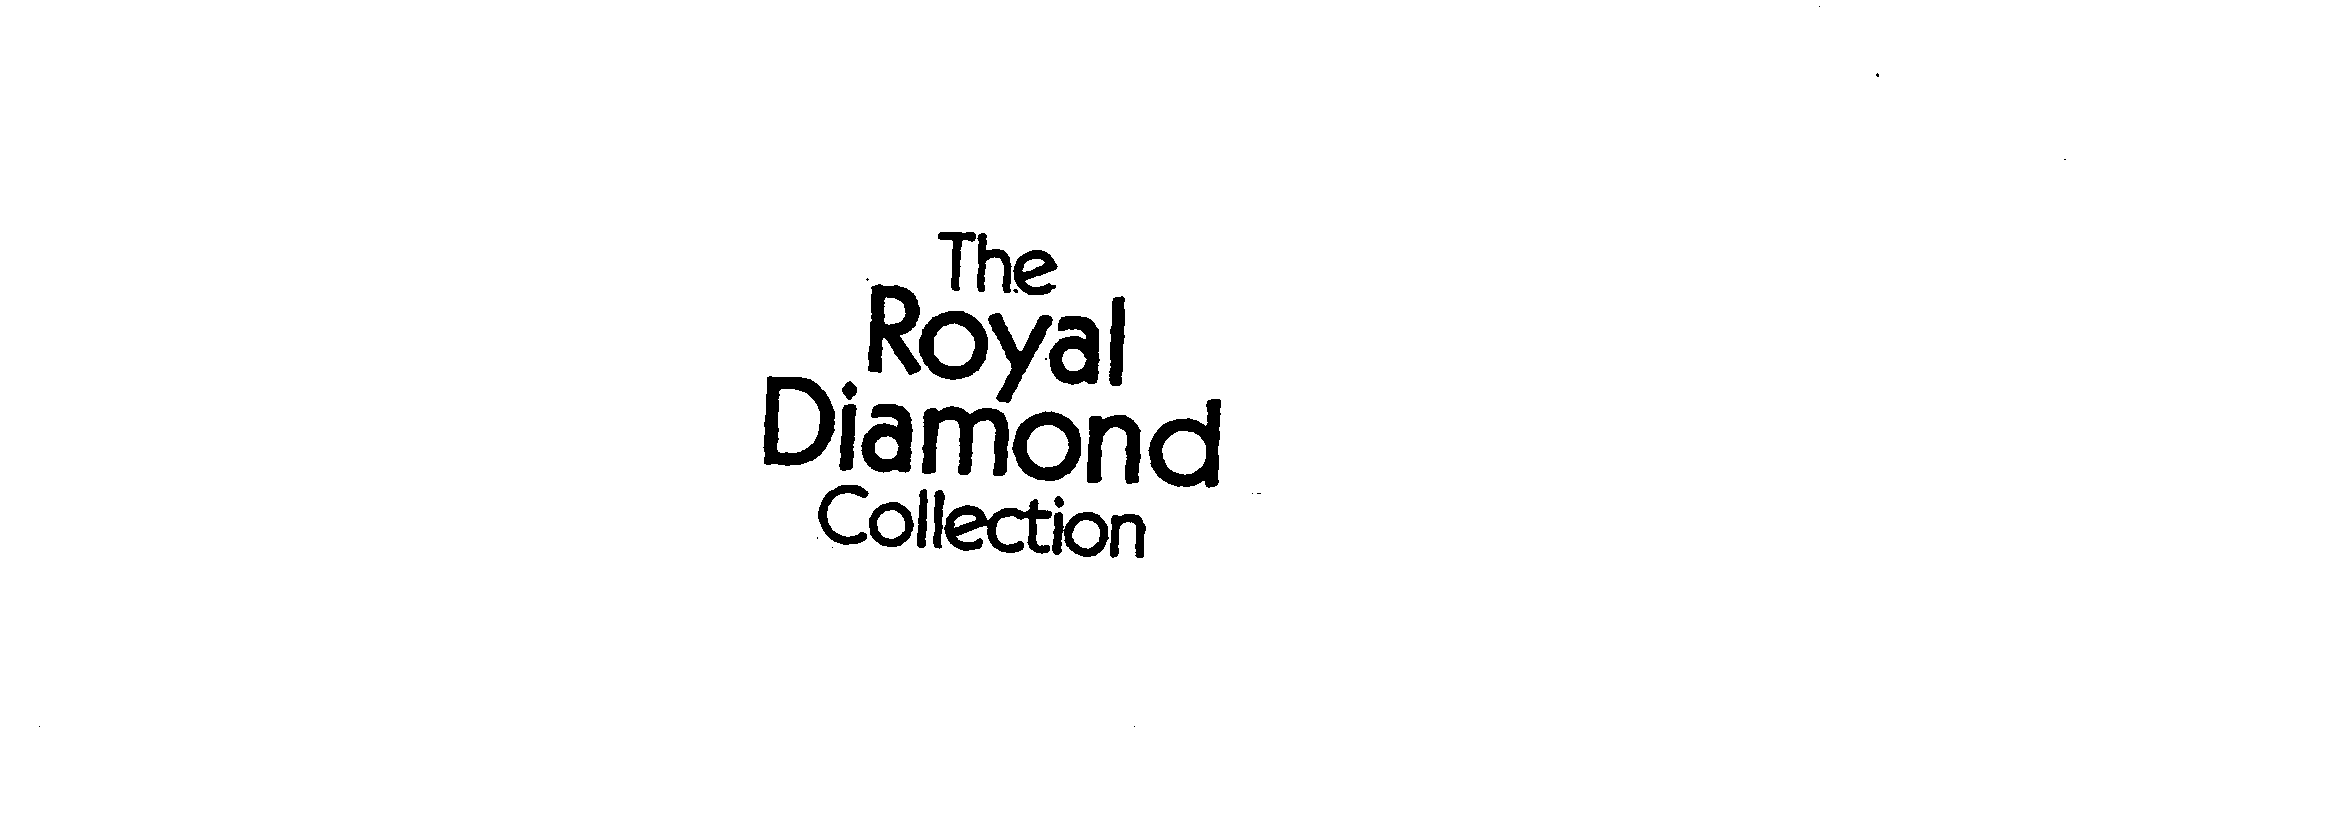  THE ROYAL DIAMOND COLLECTION